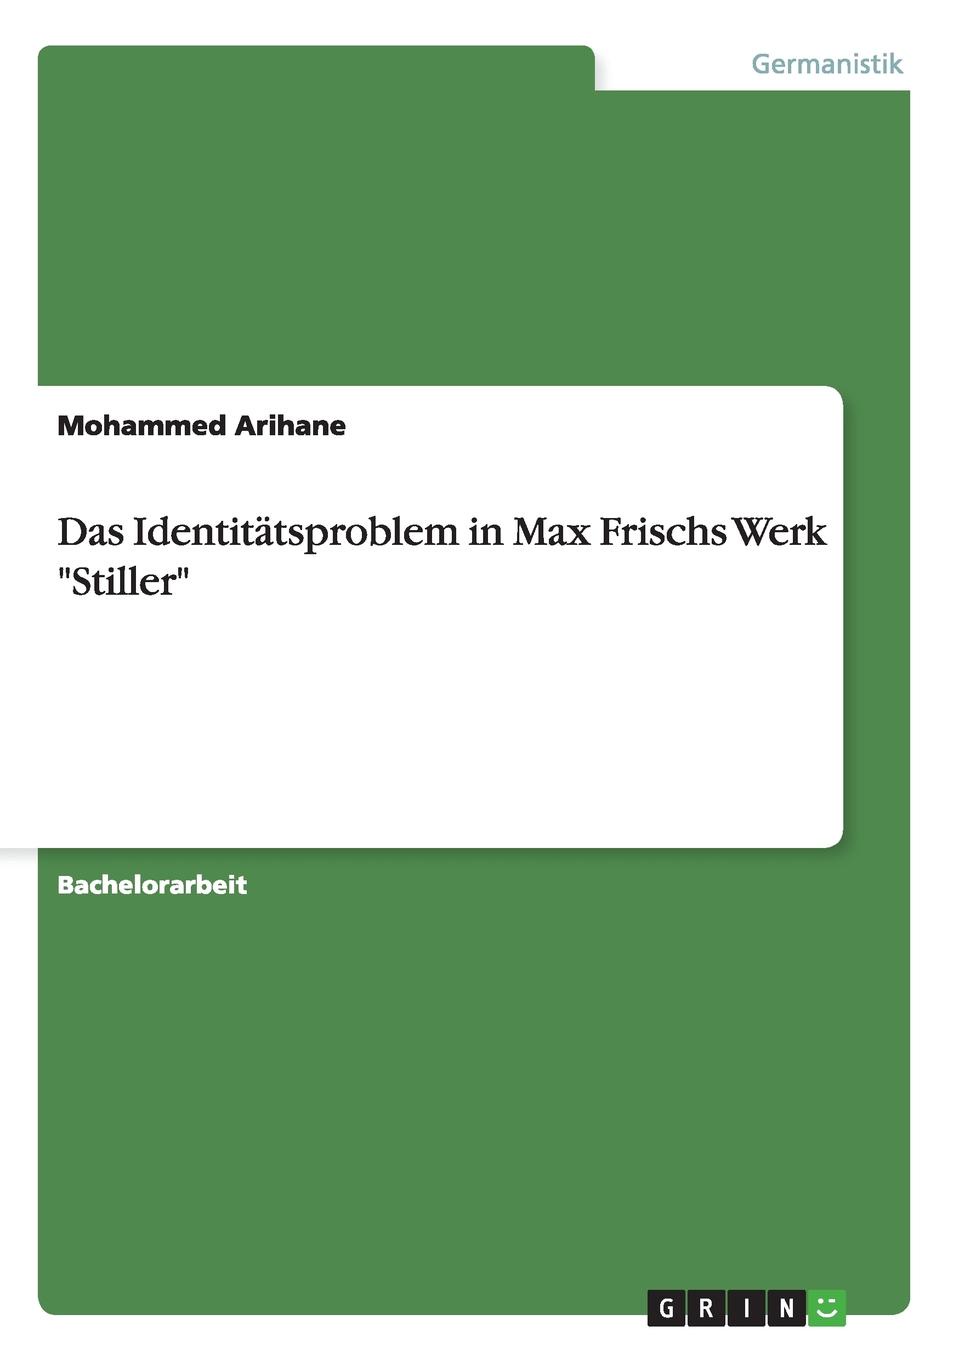 Das Identitatsproblem in Max Frischs Werk \